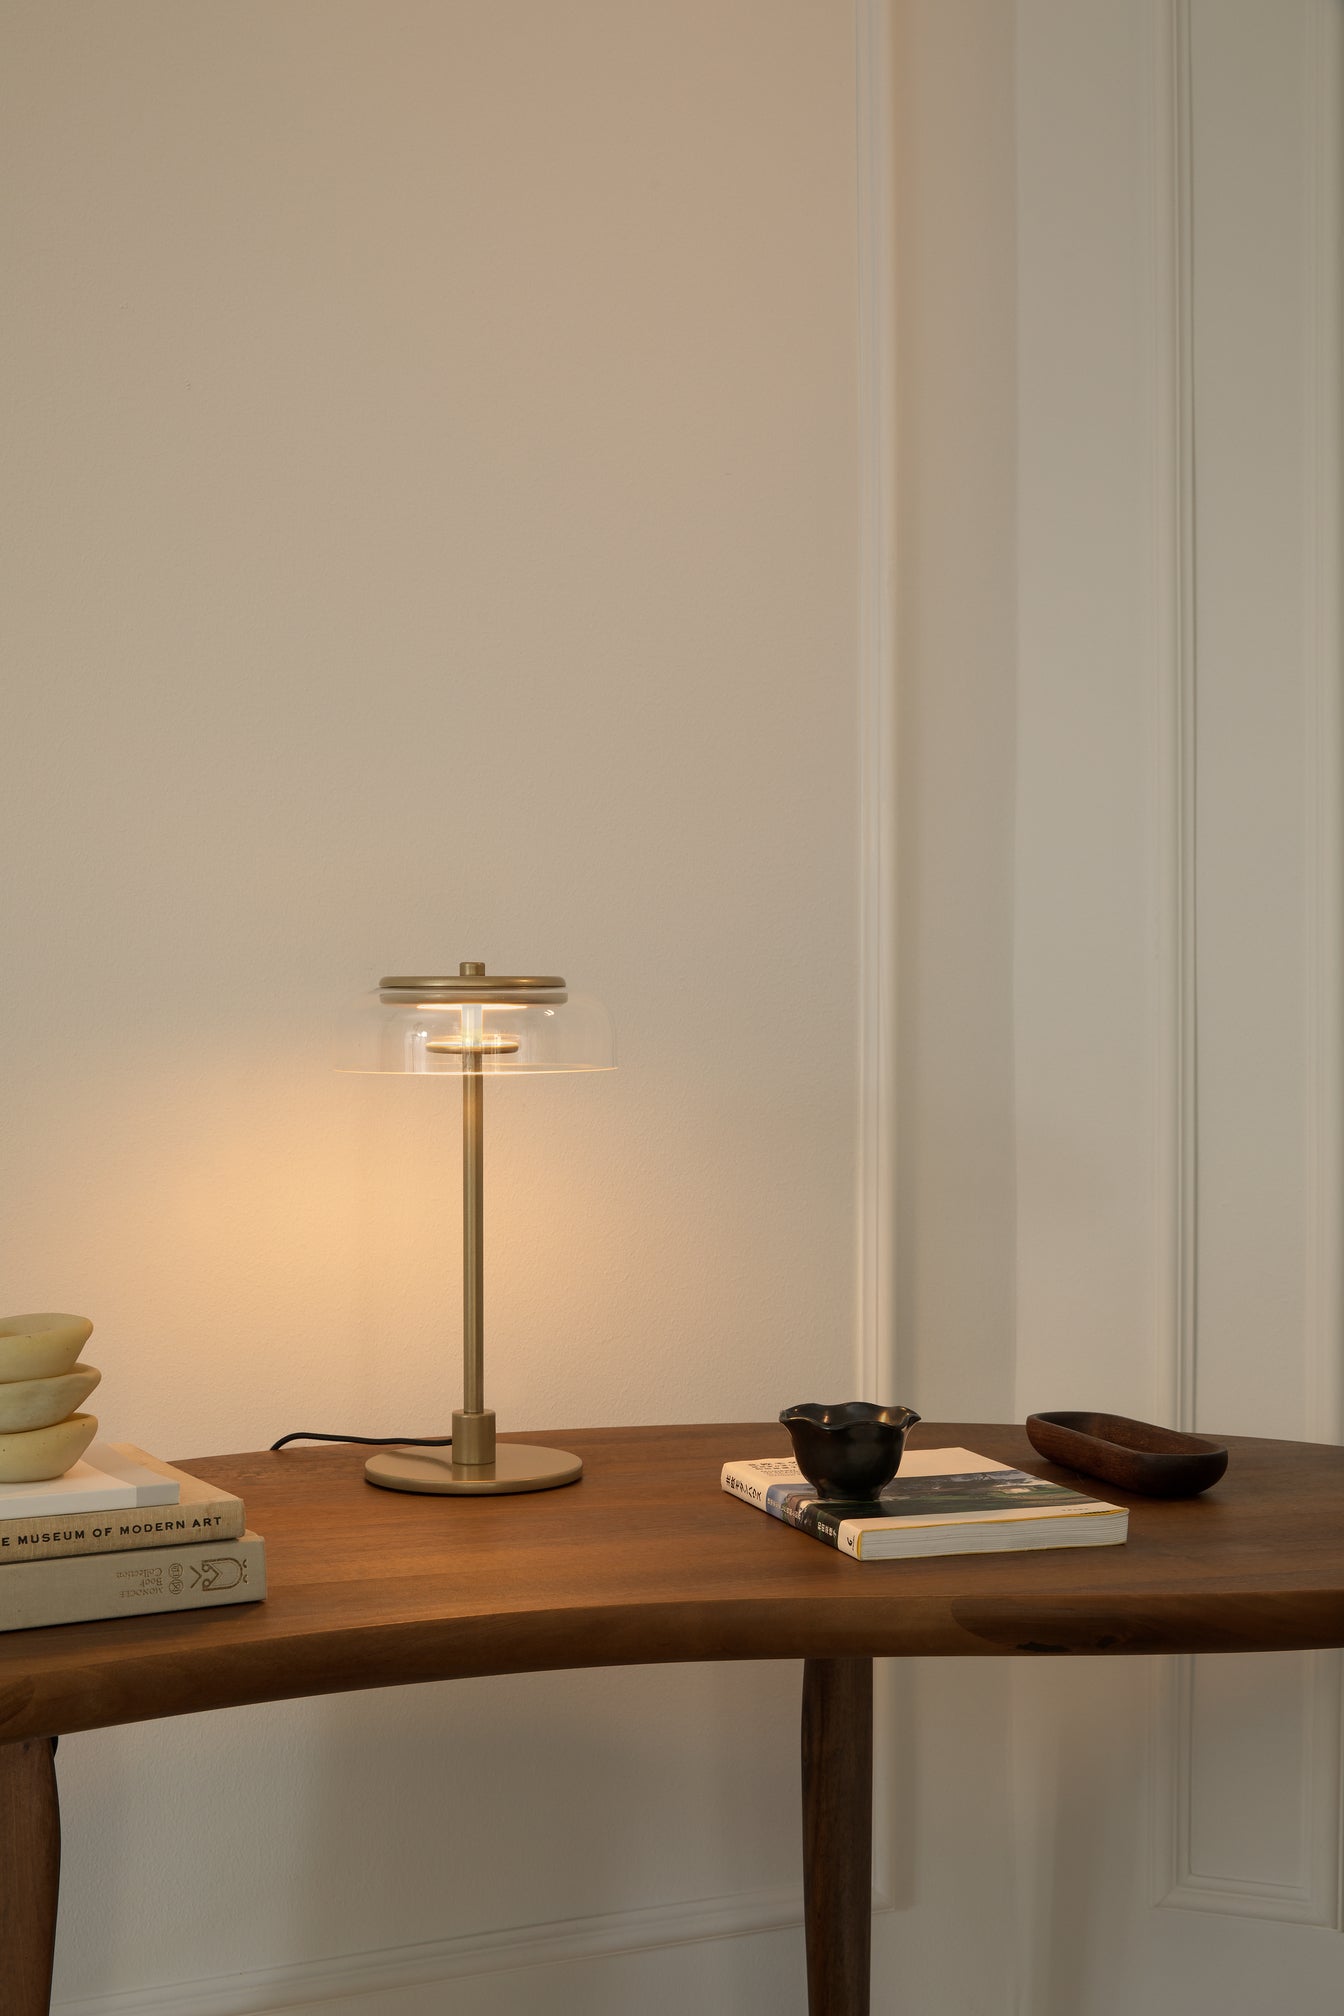 Blossi Table Small bordlampe, nordic gold / clear • NUURA